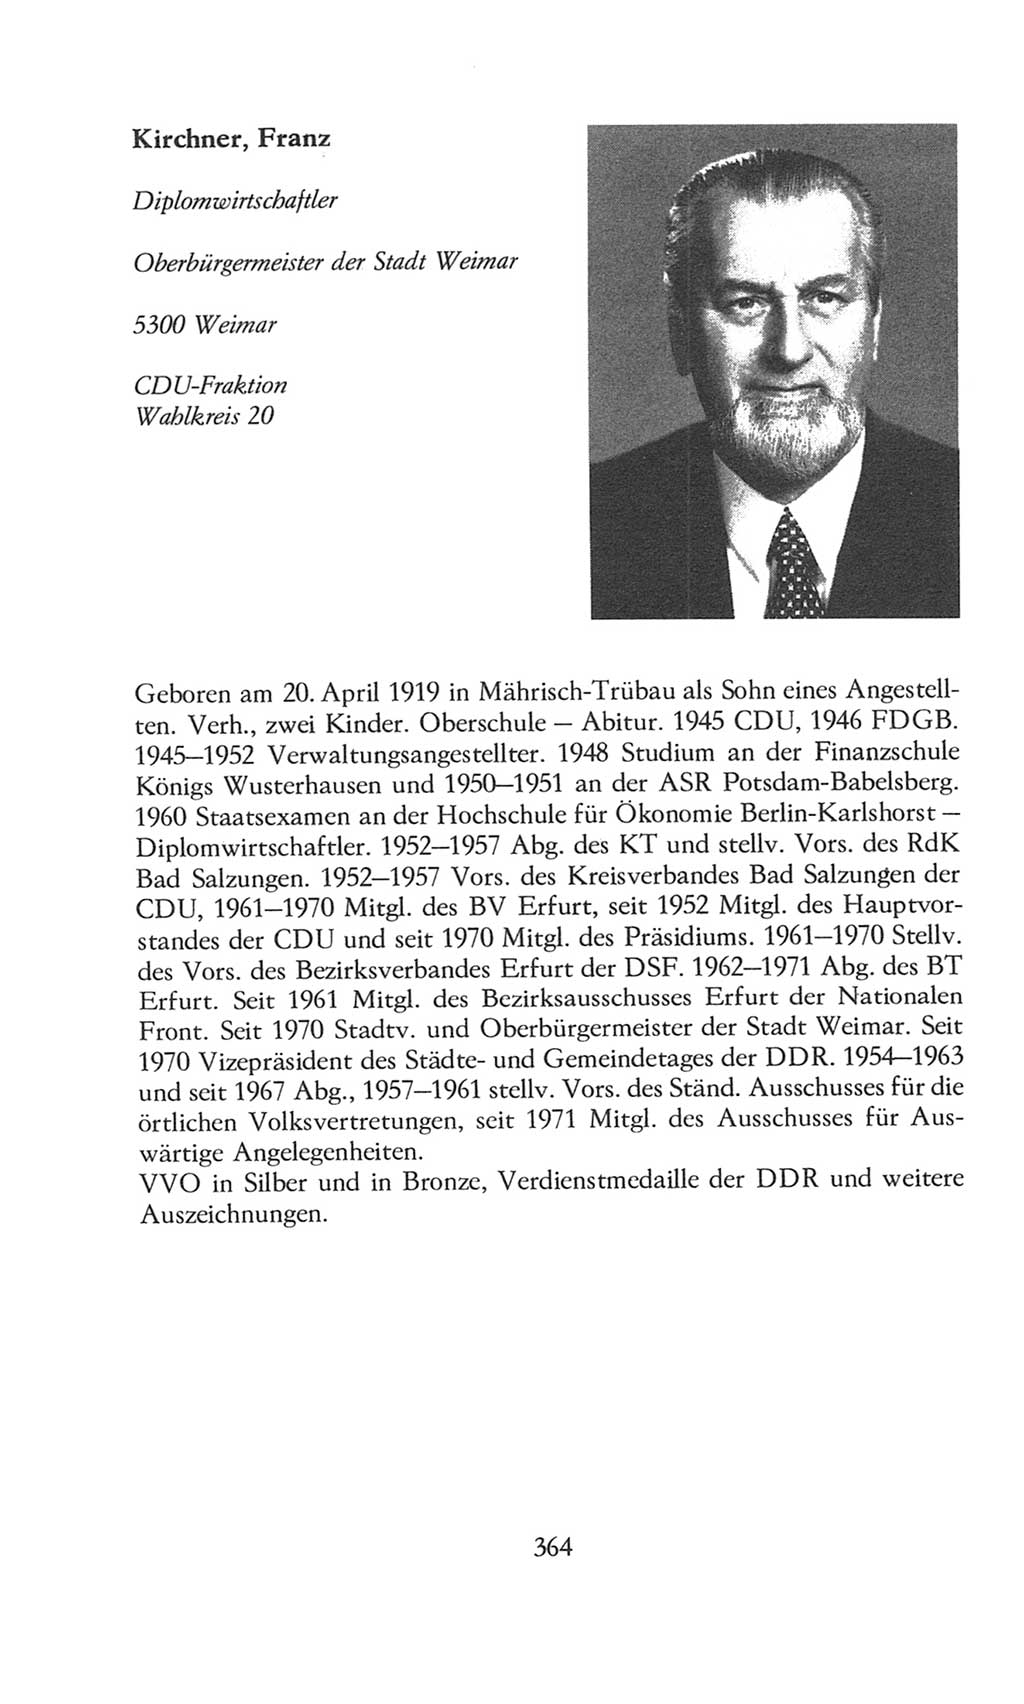 Volkskammer (VK) der Deutschen Demokratischen Republik (DDR), 8. Wahlperiode 1981-1986, Seite 364 (VK. DDR 8. WP. 1981-1986, S. 364)